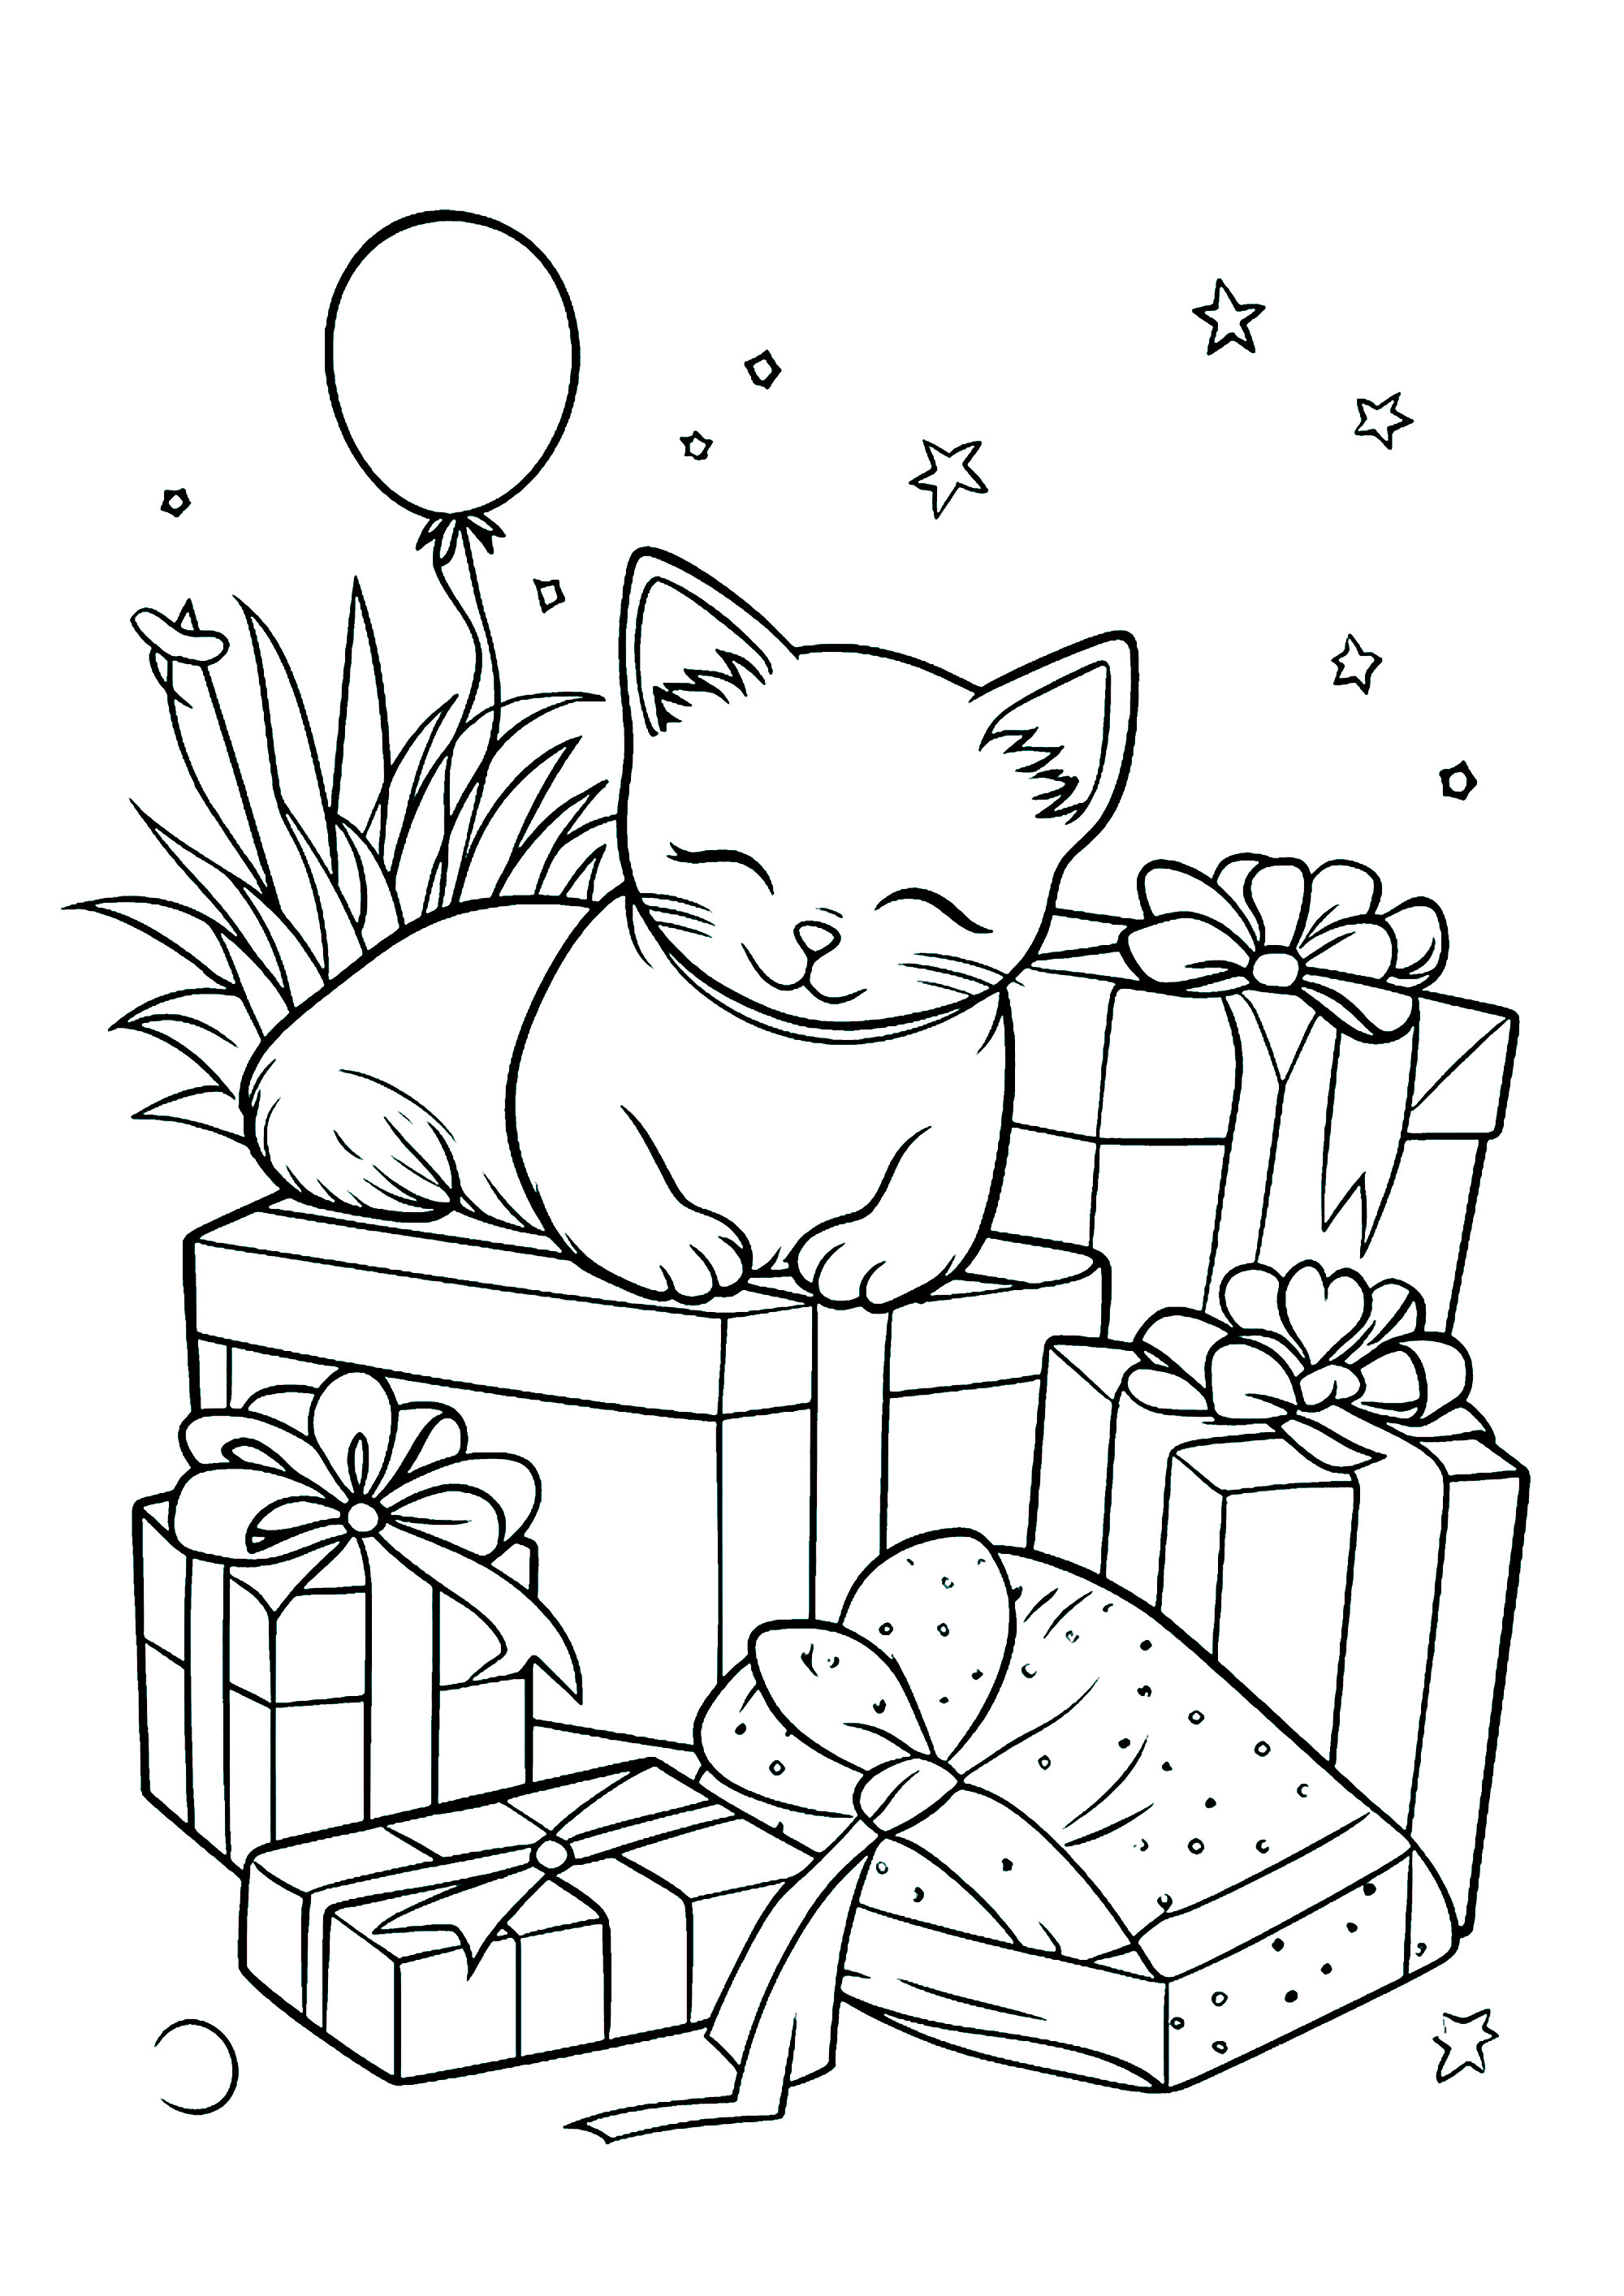 Un chat et de nombreux cadeaux emballés